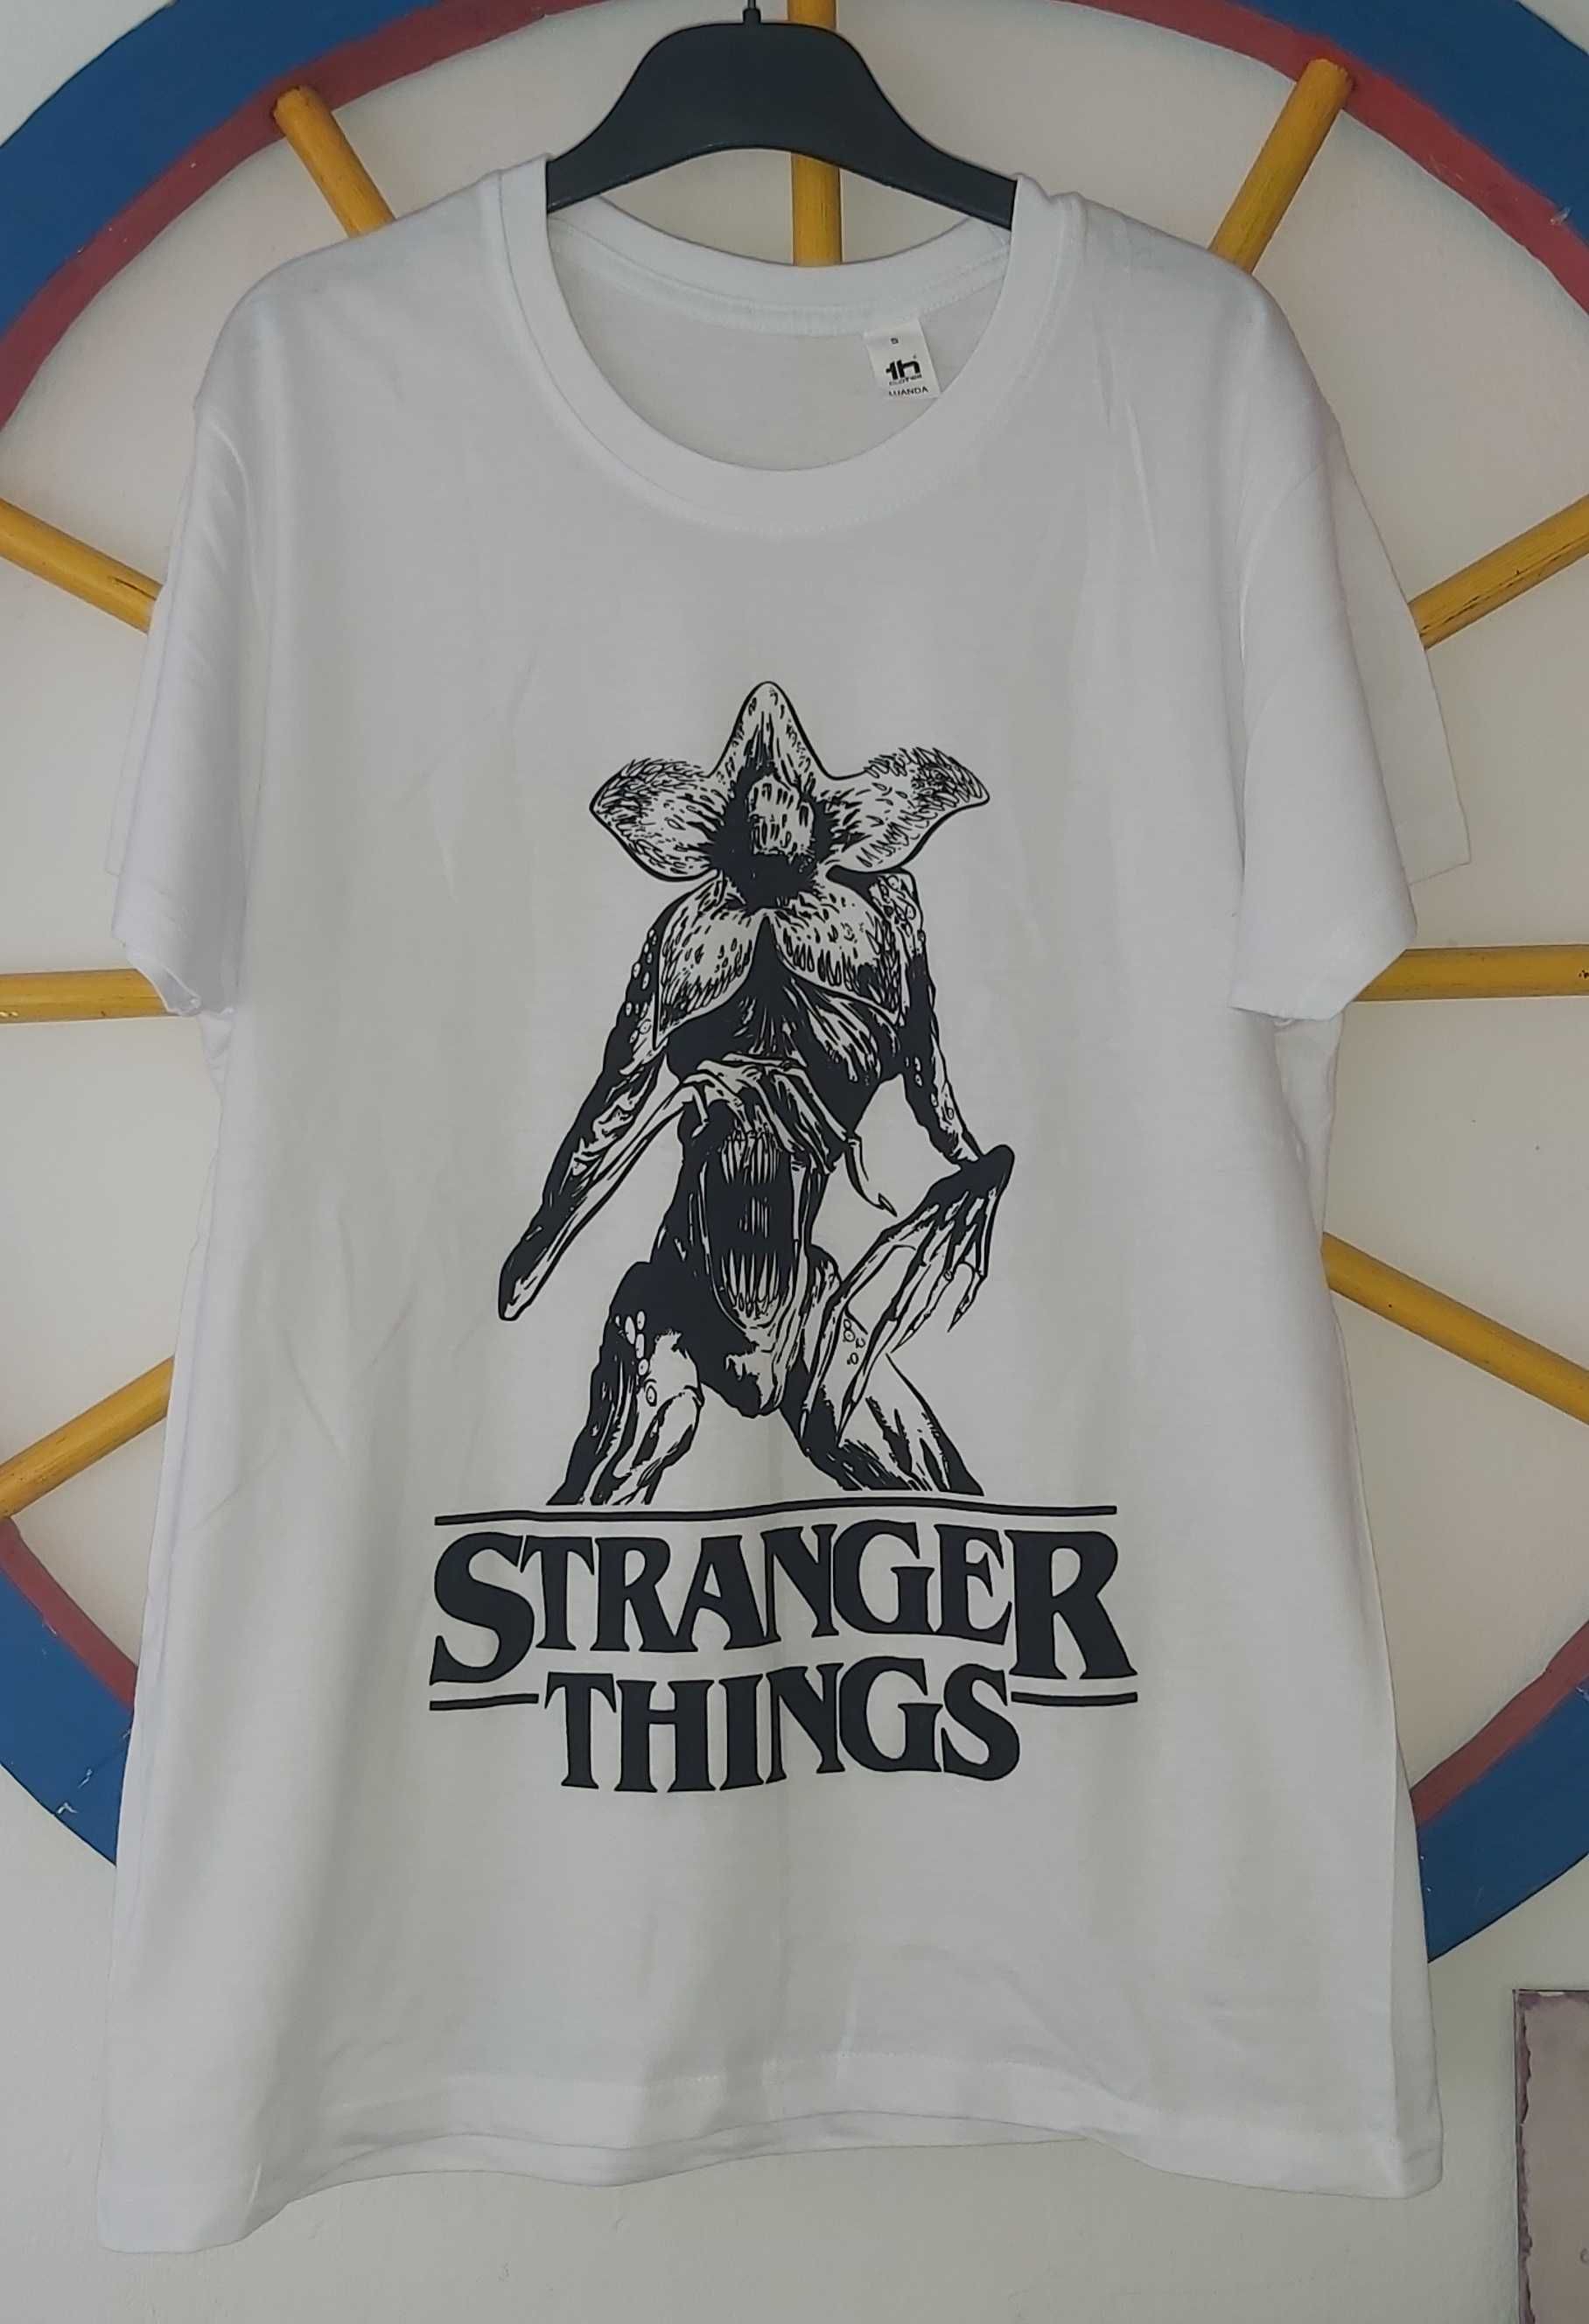 Stranger Things / The Walking Dead / Ozark - T-shirt - Nova